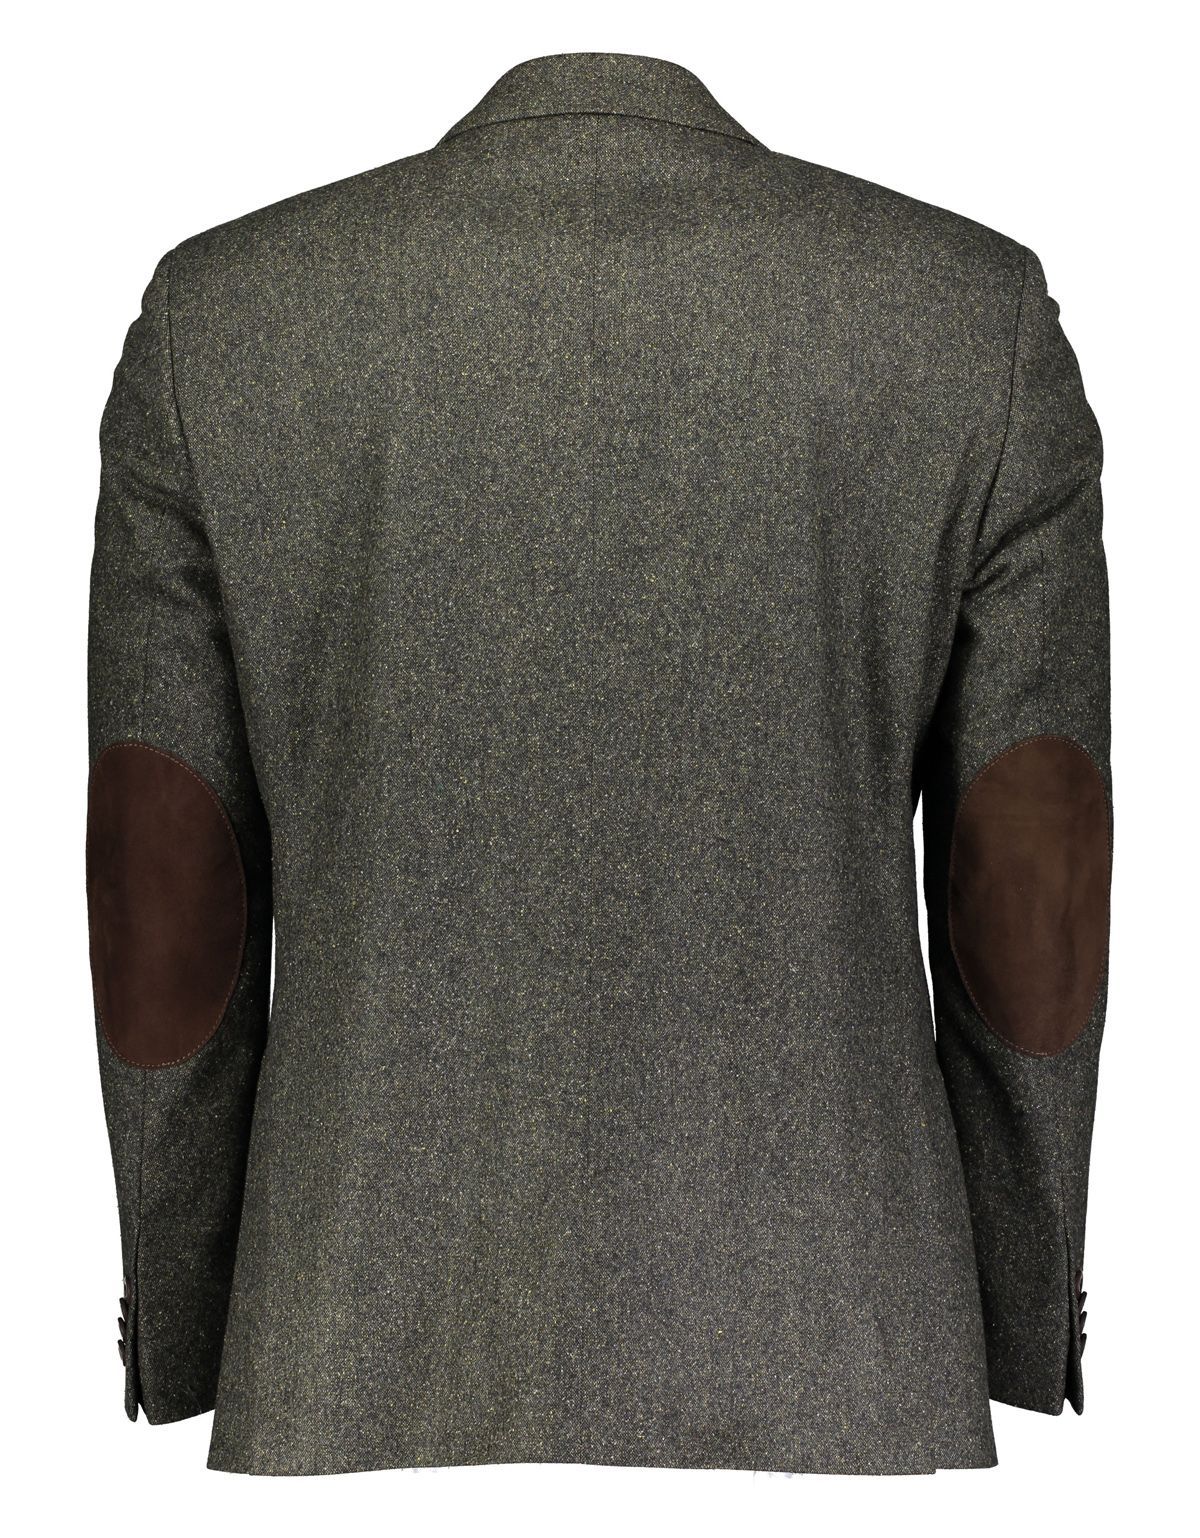 Пиджак мужской шерстяной Roy Robson с накладными карманами, modern fit | купить в интернет-магазине Olymp-Men